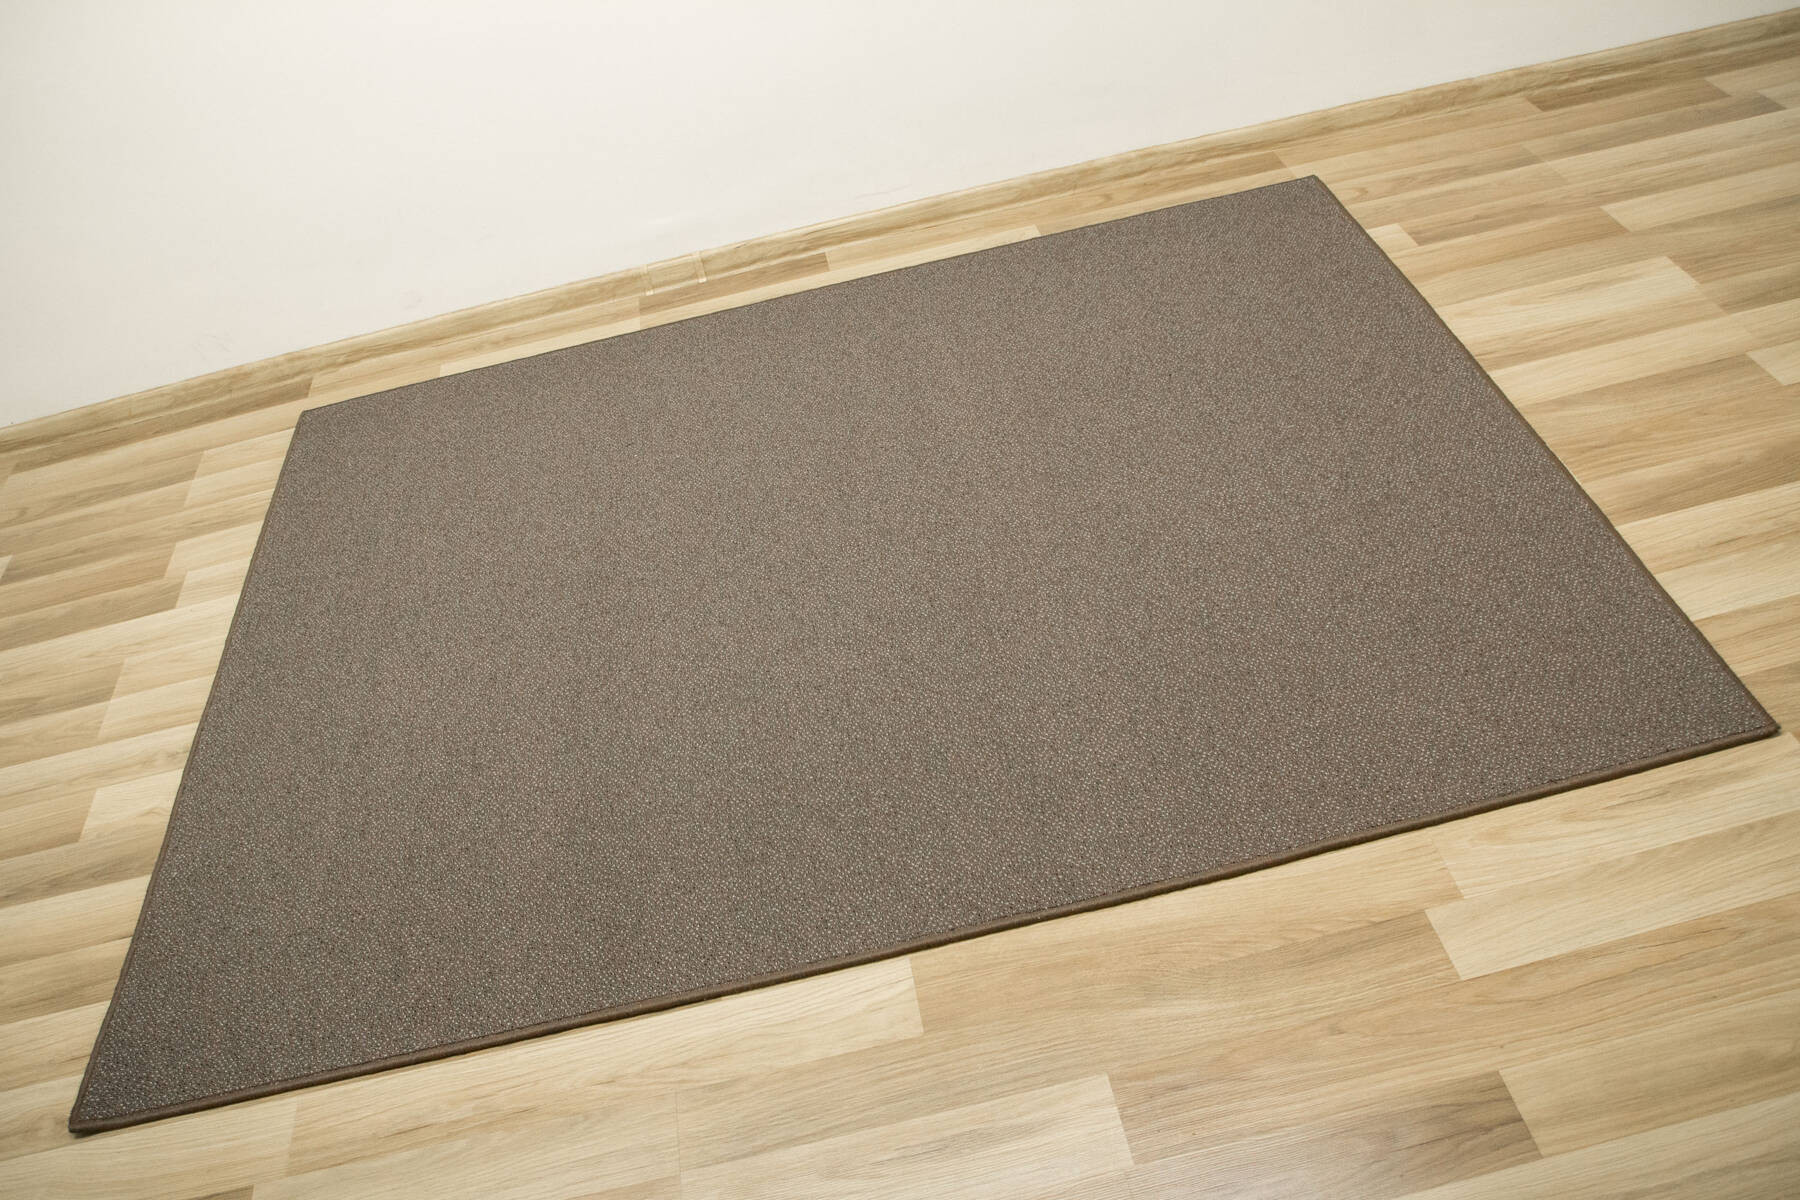 Metrážový koberec Pacific 92 hnědý / šedý